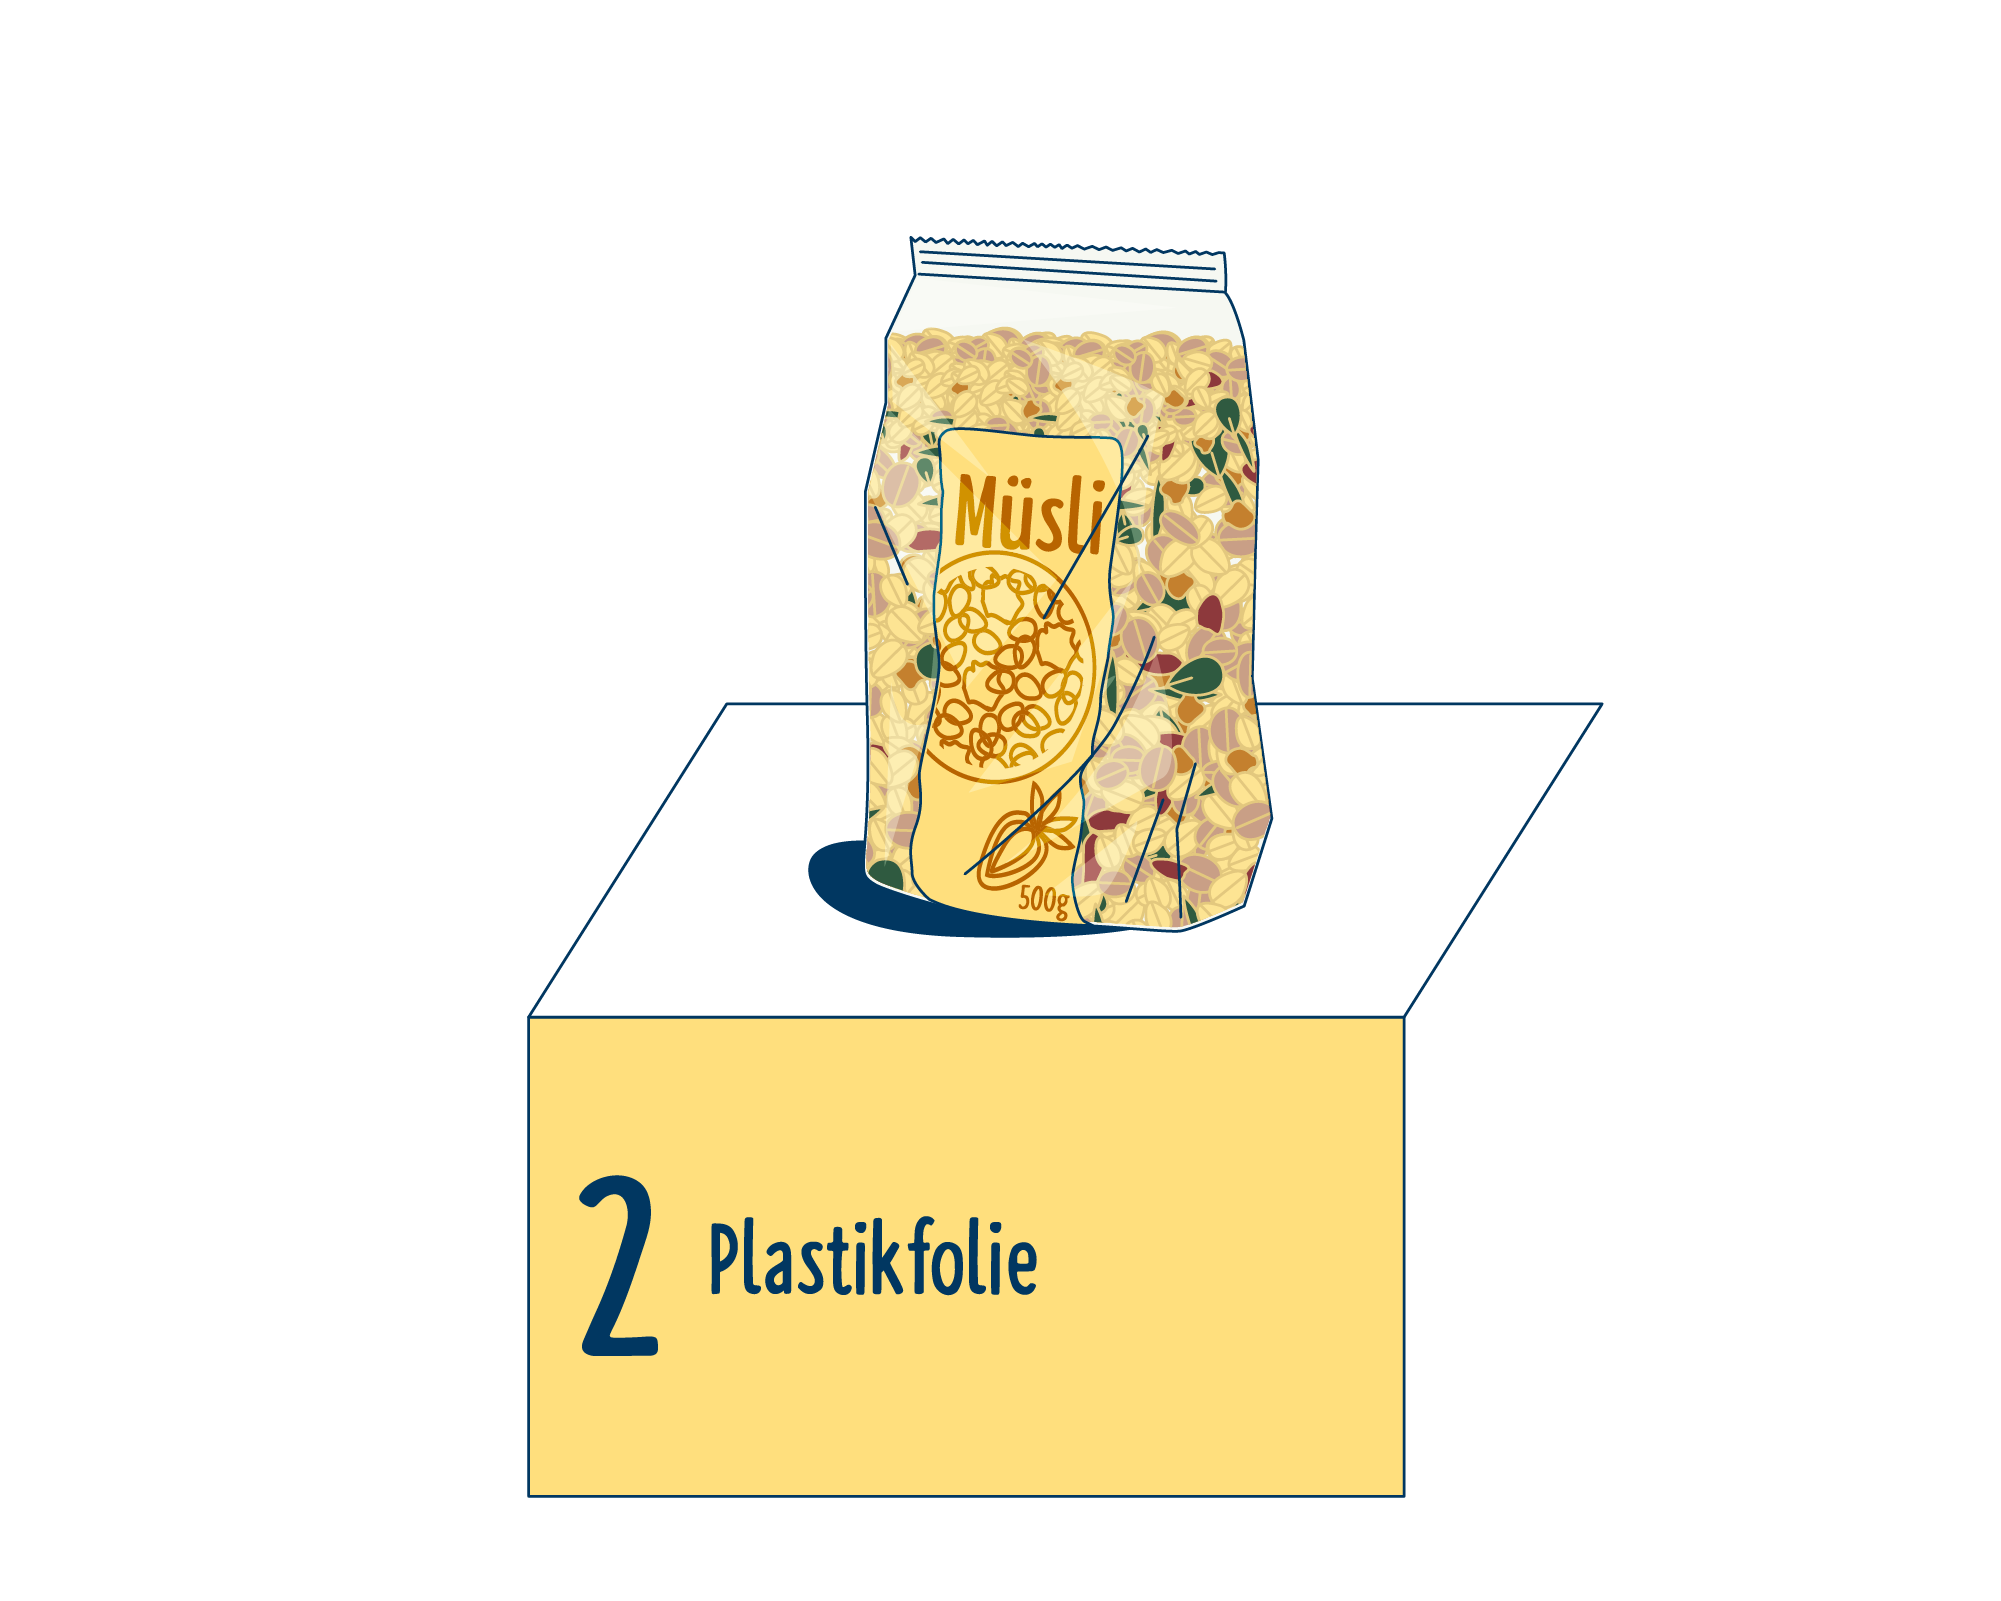 Bild Produktverpackung von Müsli eingeordnet auf Platz 2, bestehend aus Plastikfolie.